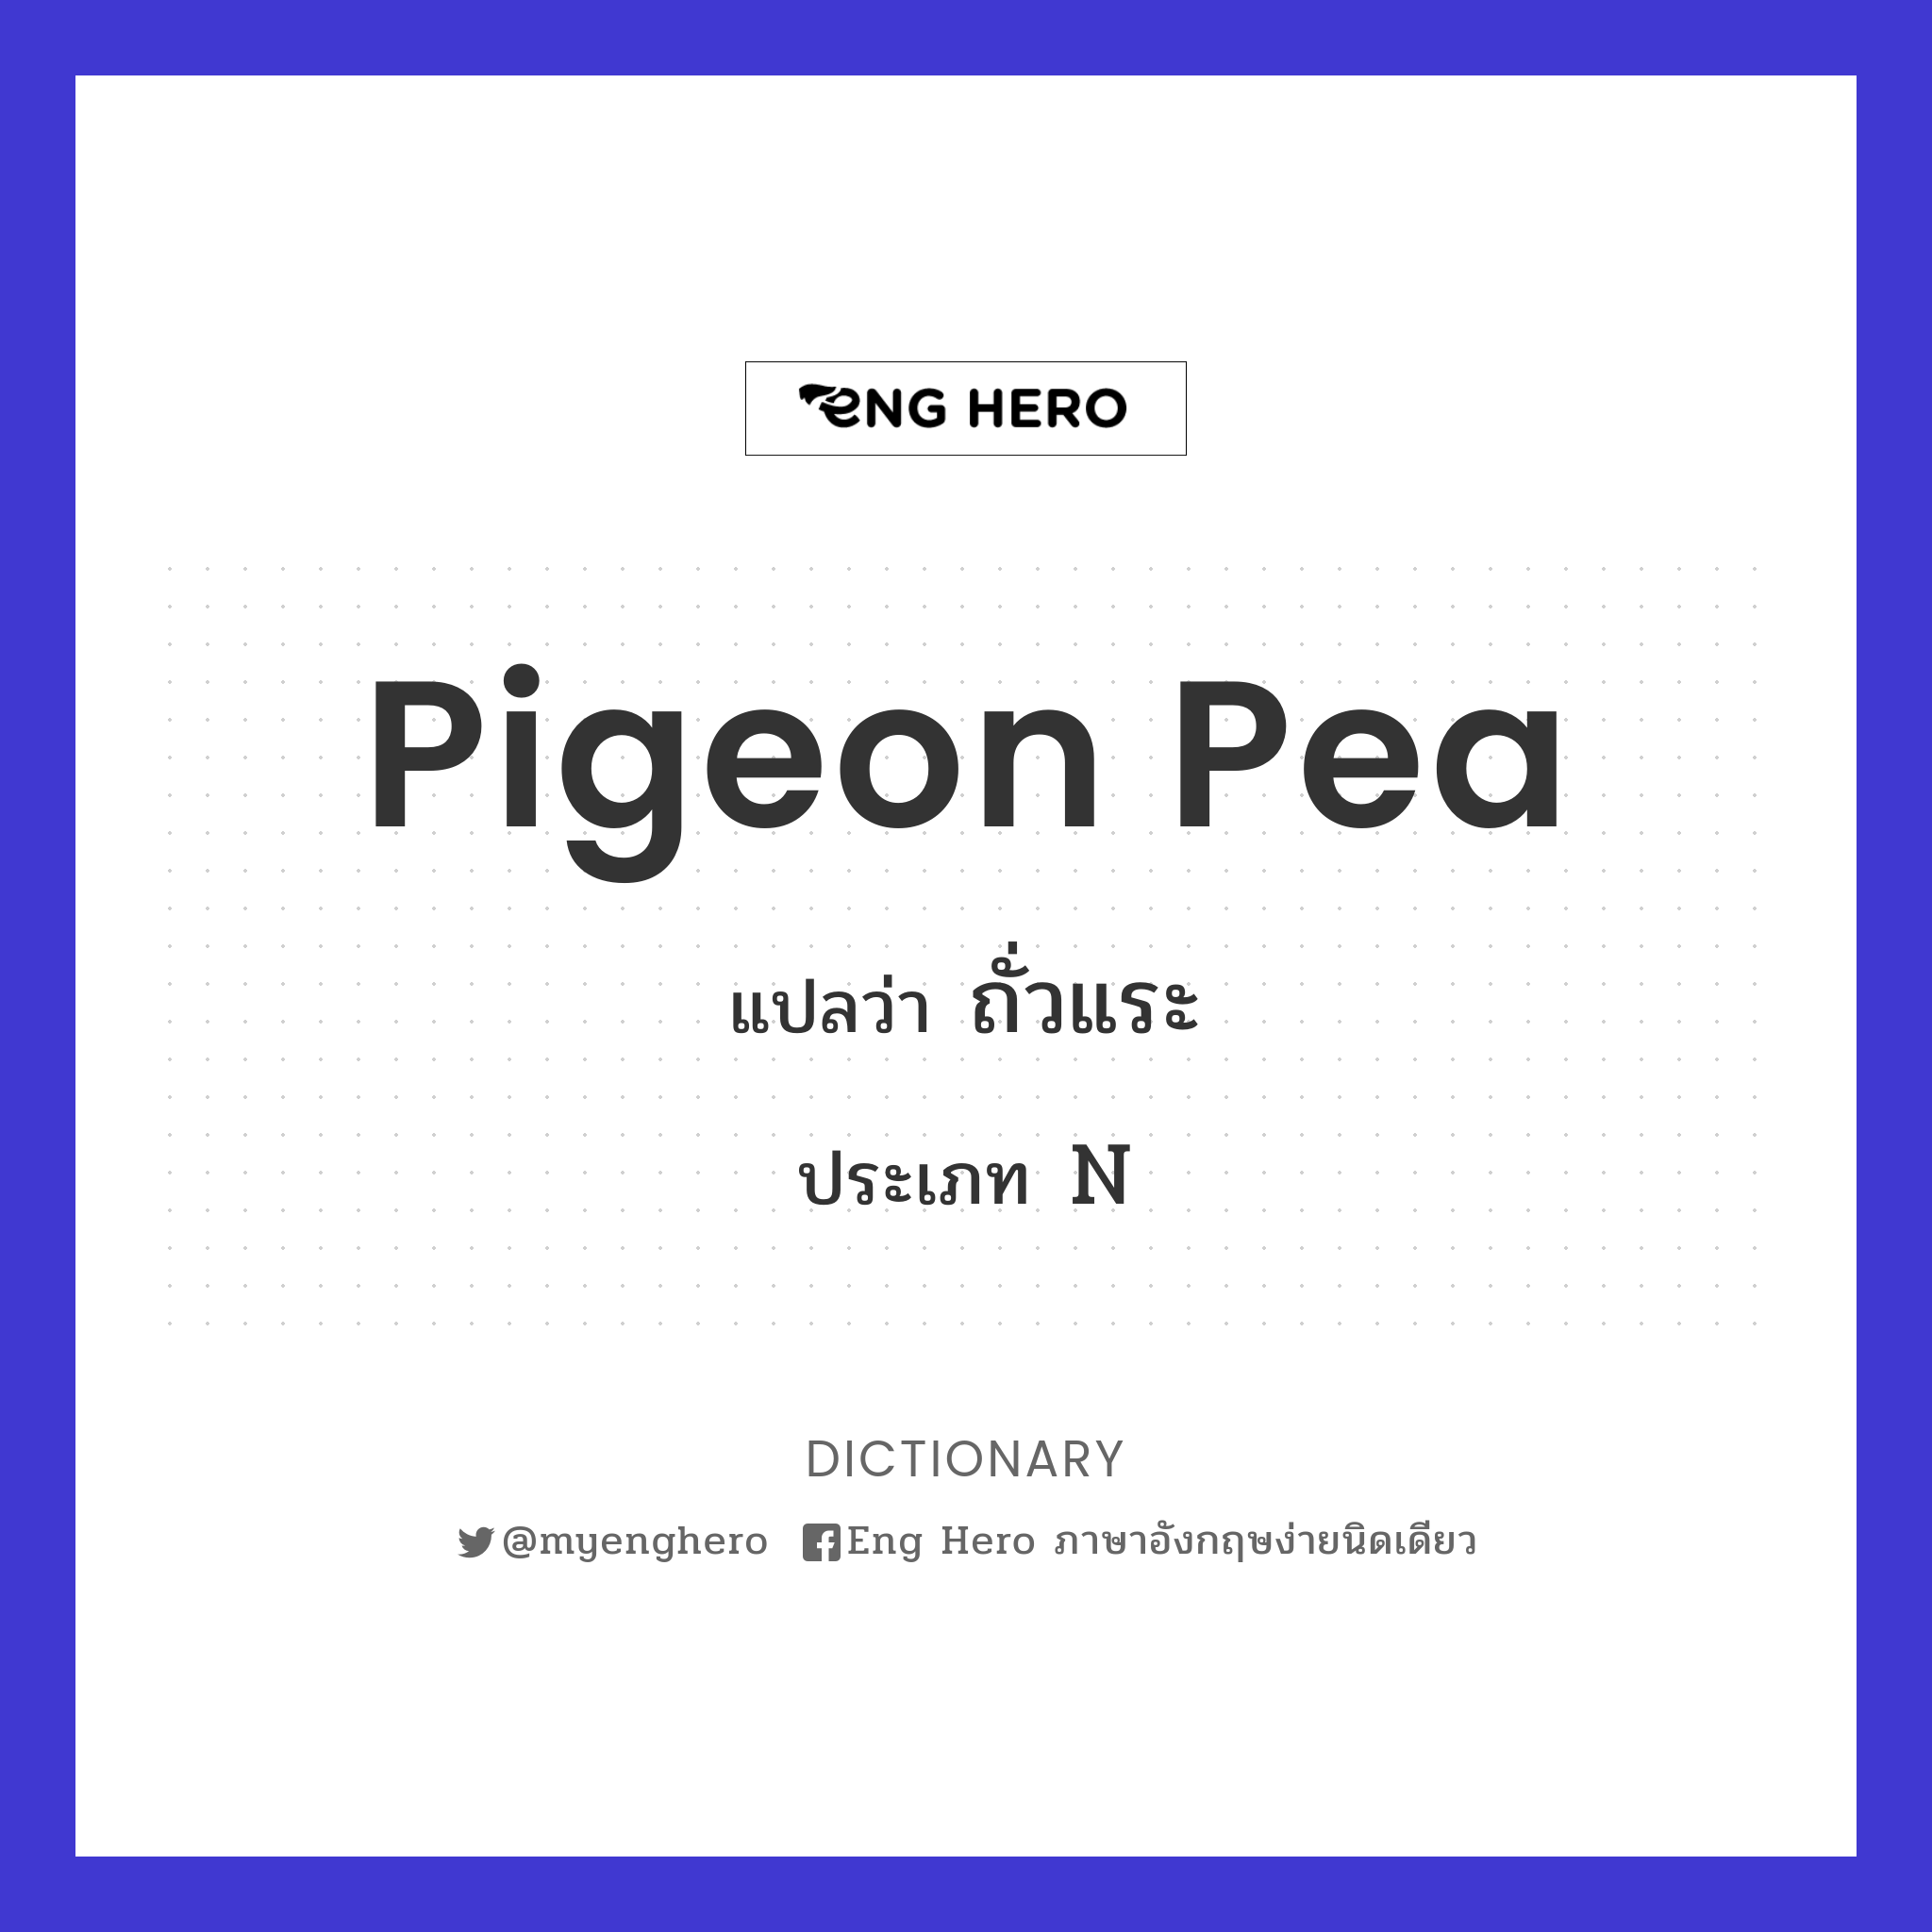 pigeon pea